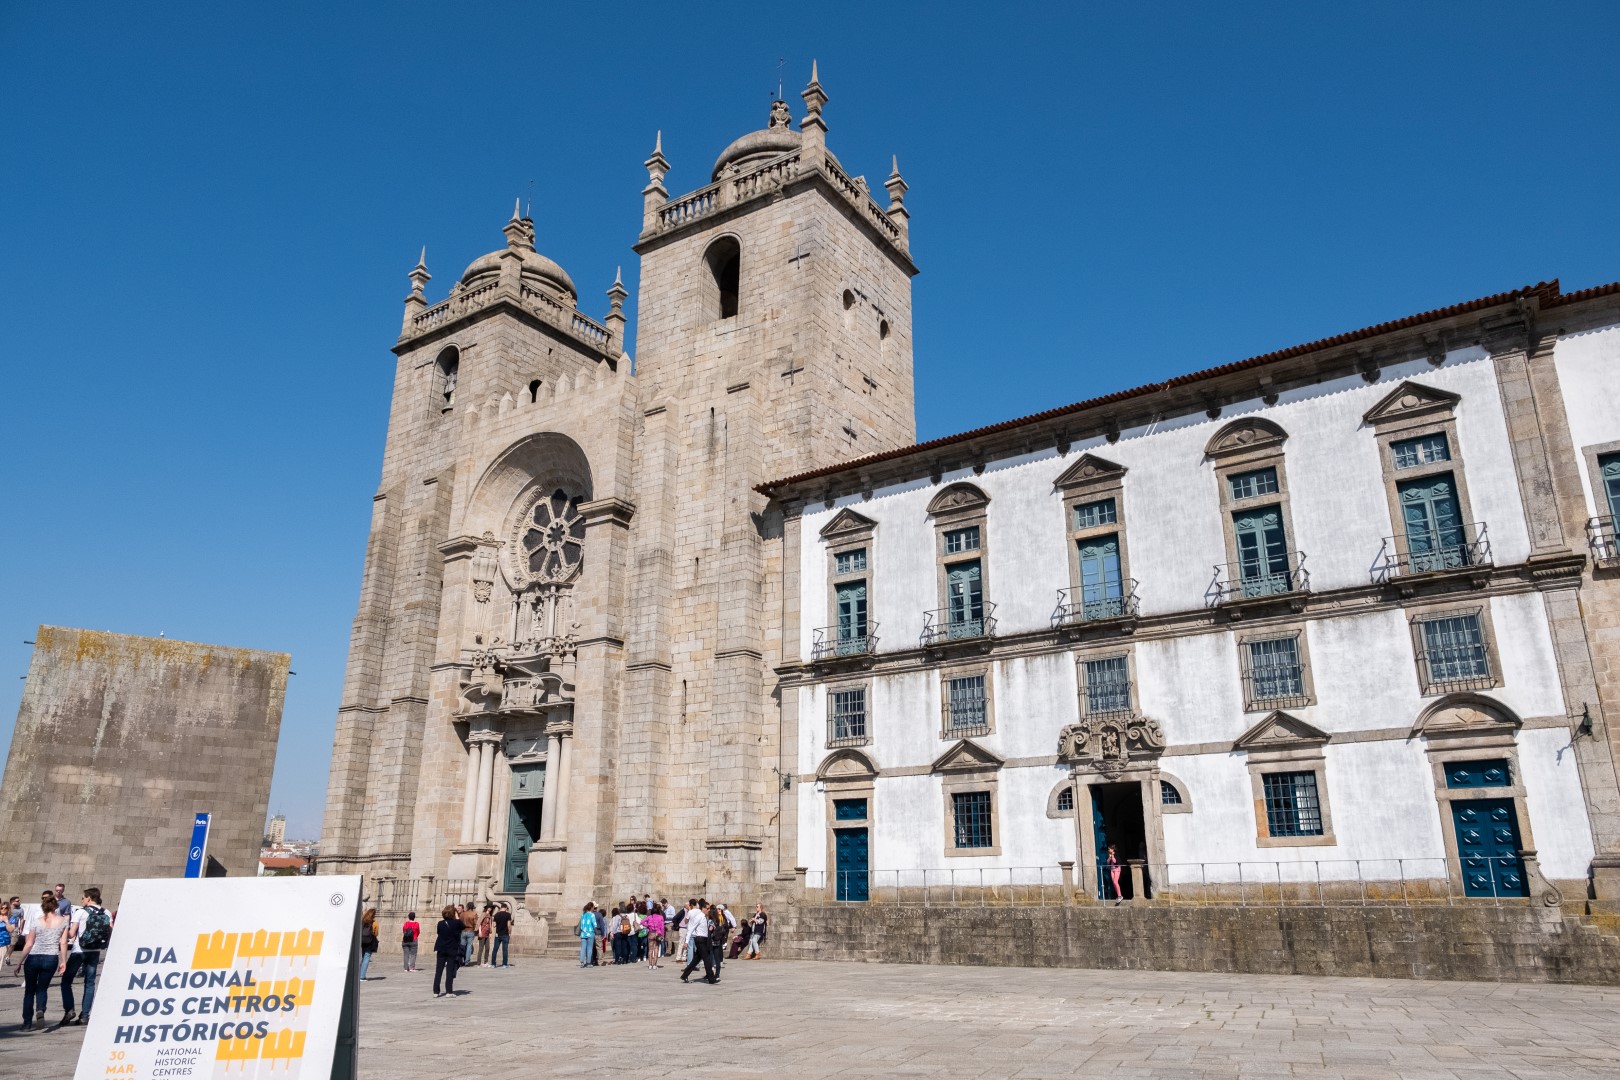 Dia Nacional Dos Centros Históricos Foi Um Sucesso Notícias Santa Casa Da Misericórdia Do Porto 4471